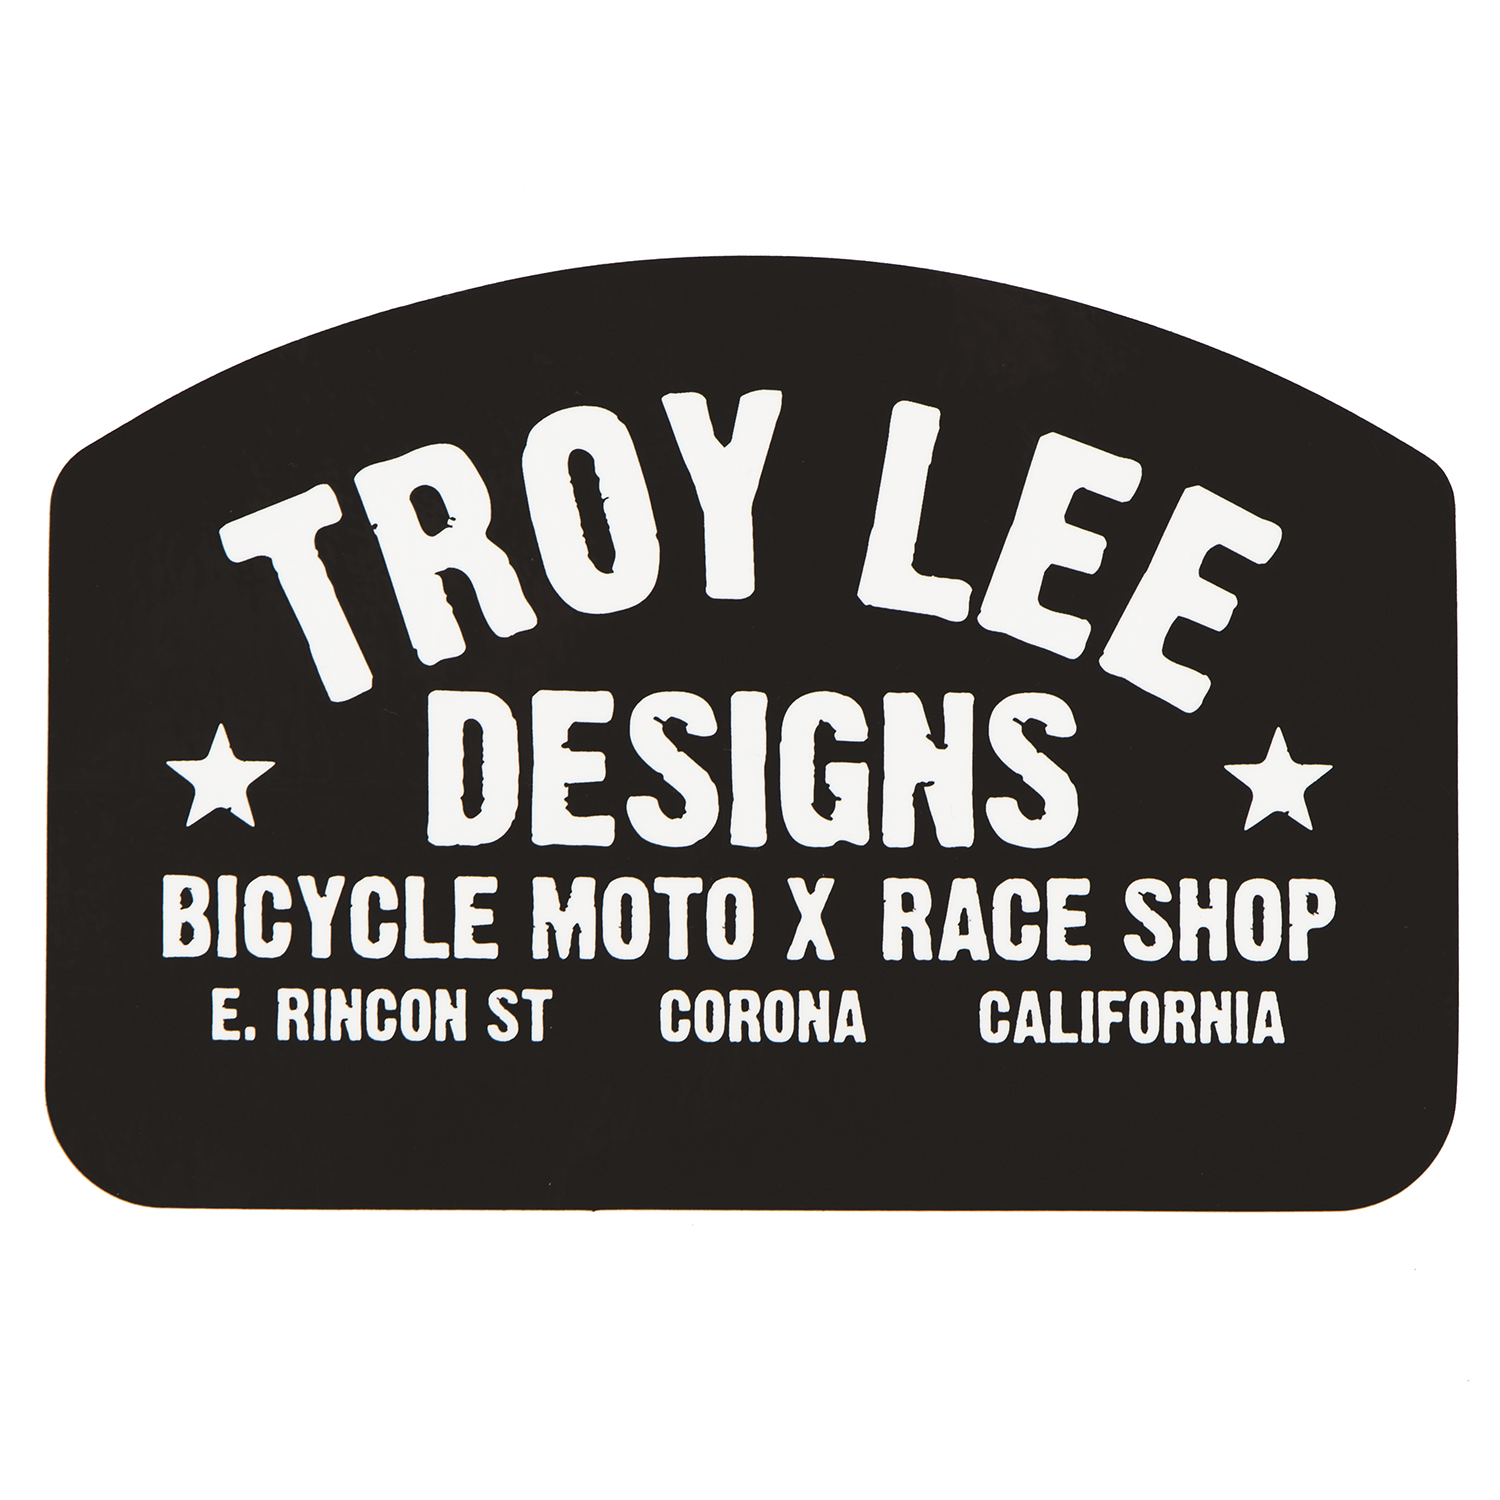 Troy Lee Designs Autocollants Race Shop Black/White - 6.5 inches